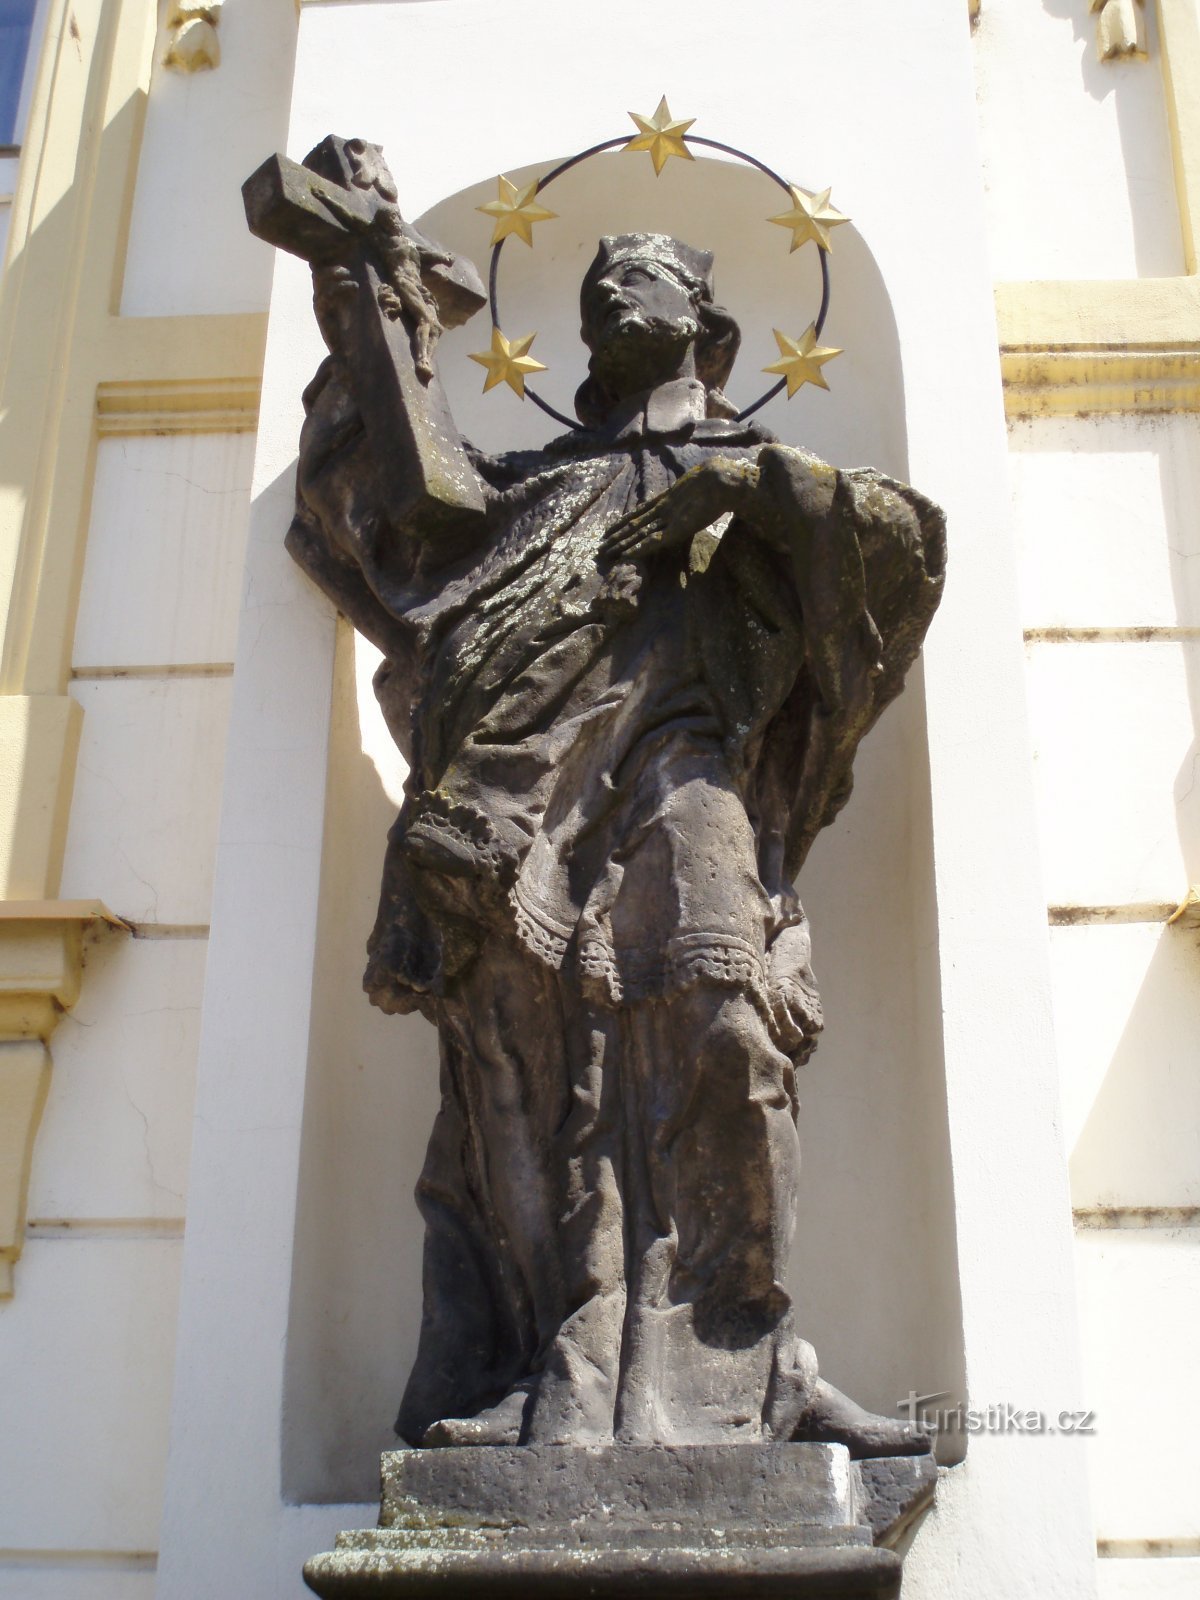 圣雕像Jan Nepomucký 排名第 163 位（Hradec Králové，11.6.2011 年 XNUMX 月 XNUMX 日）